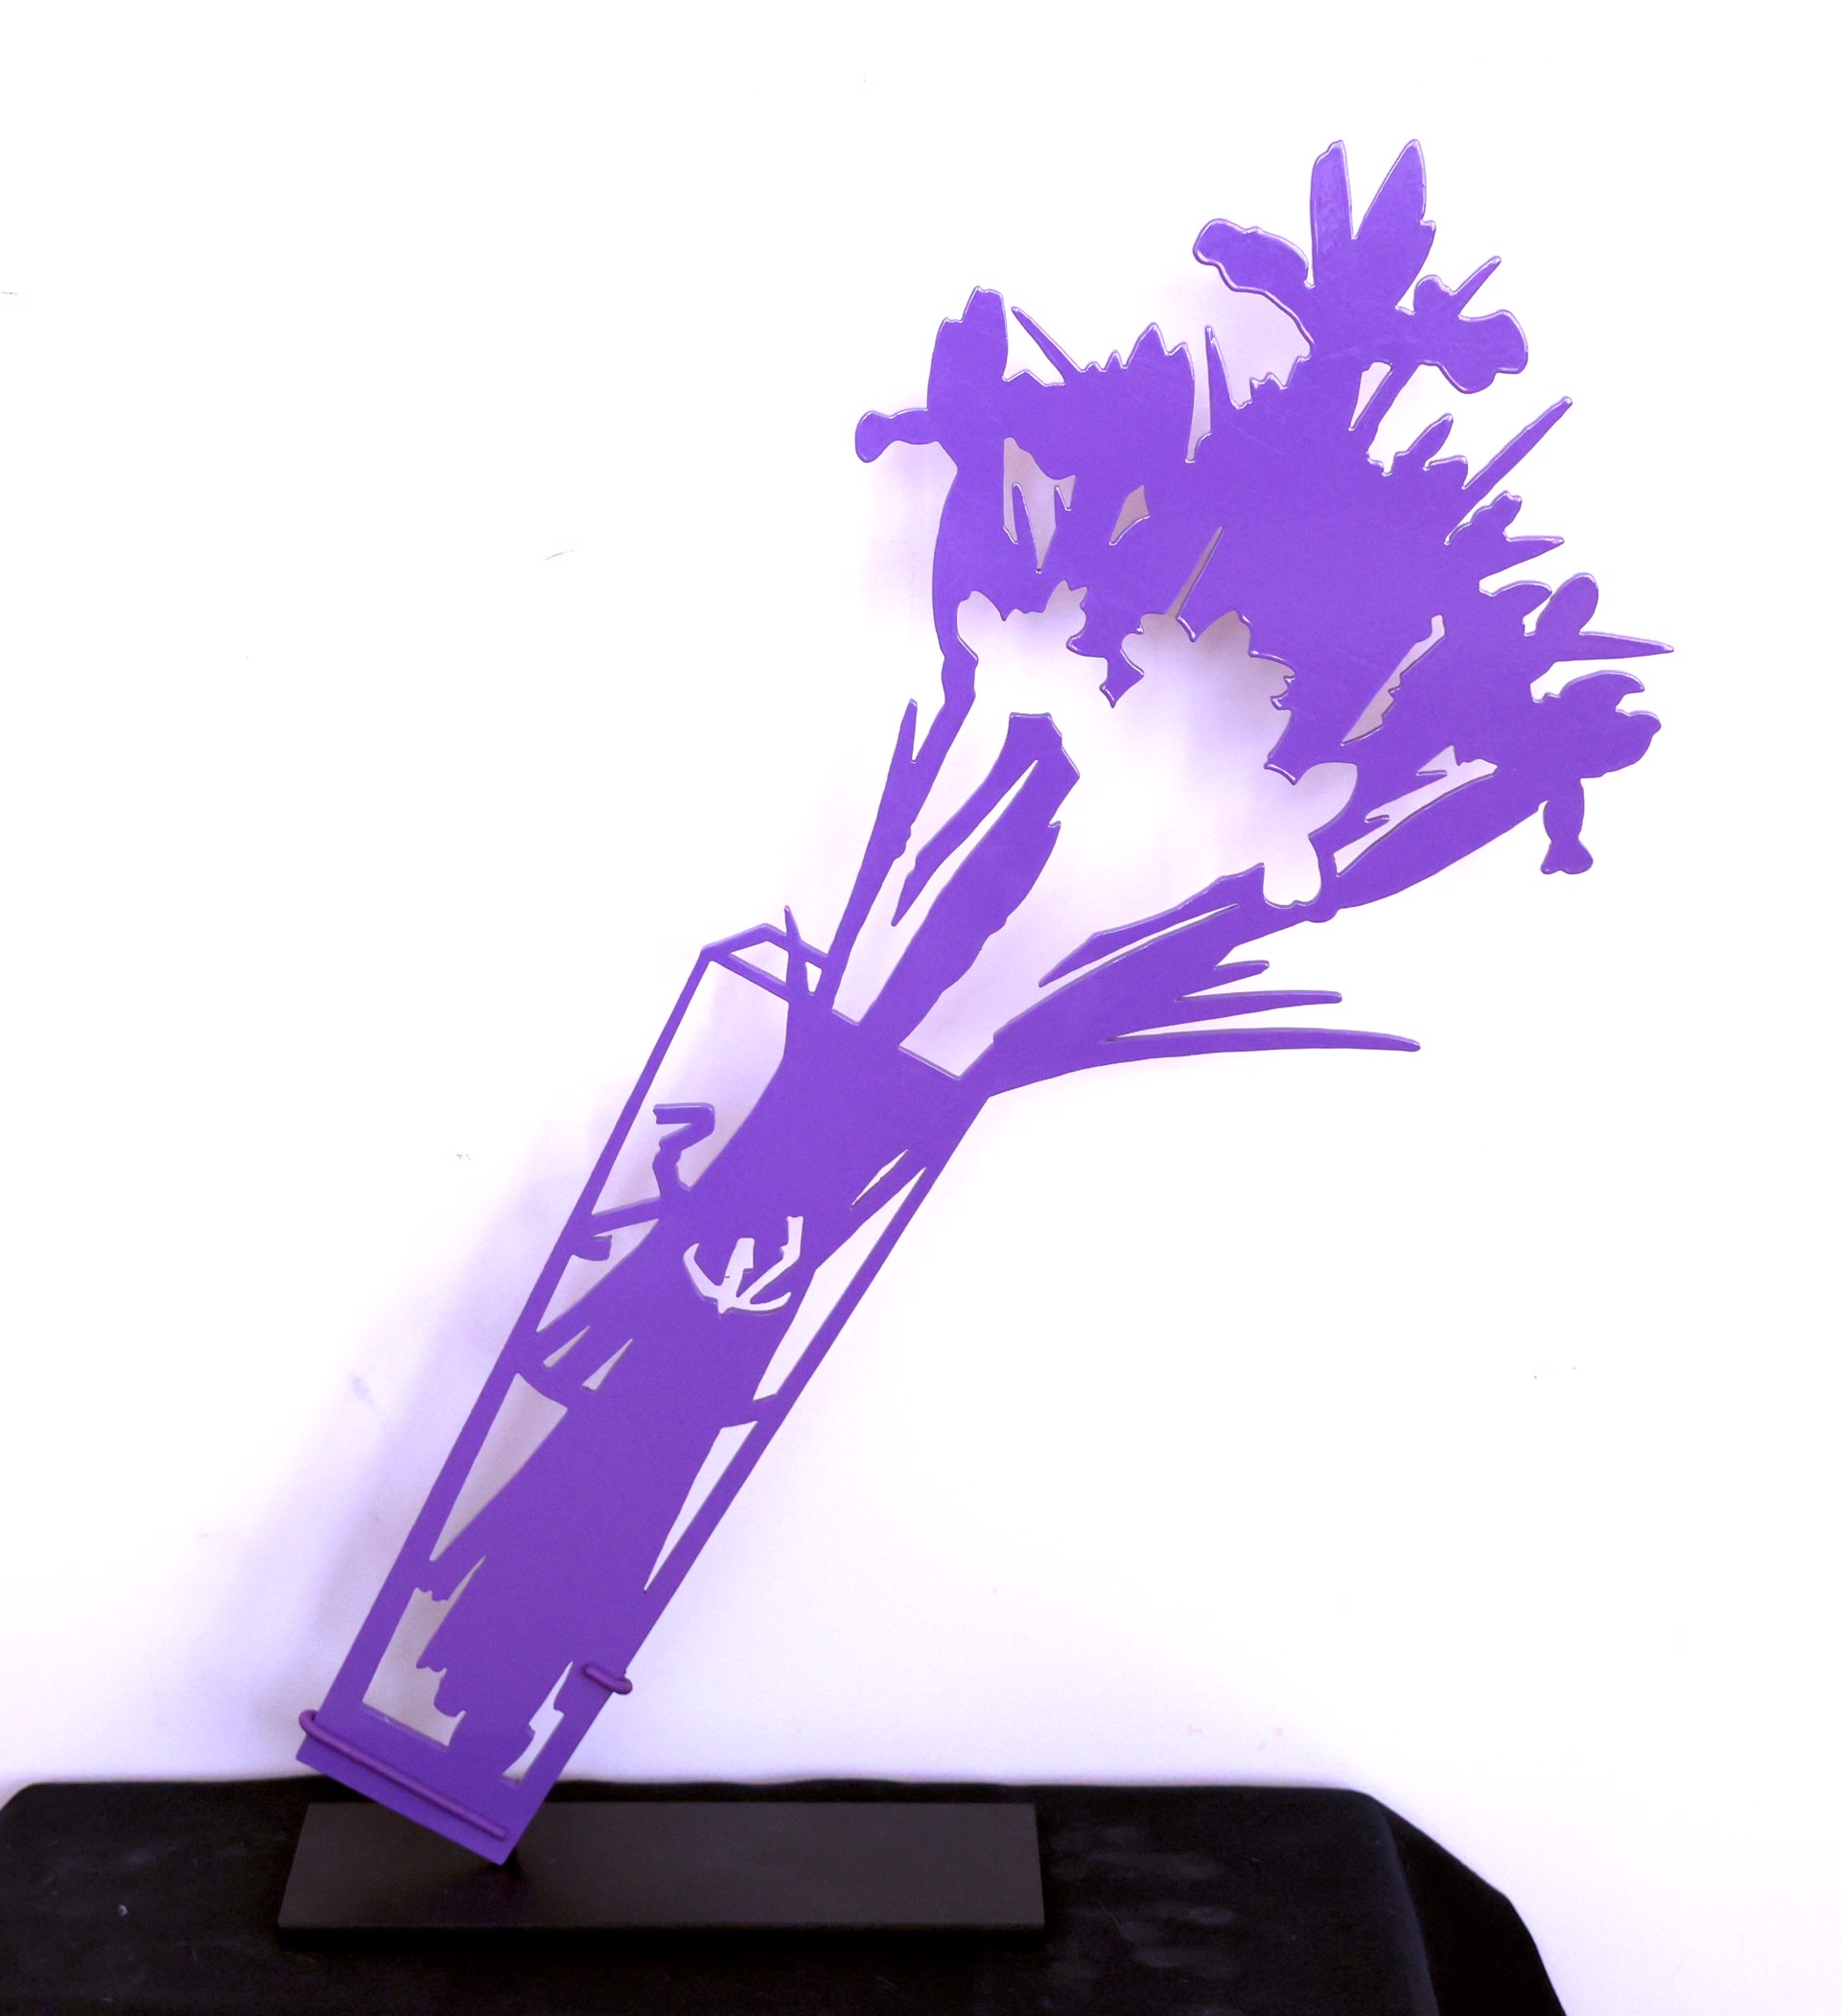 Tipping Iris in purple (sculpture) by Gary Bukovnik